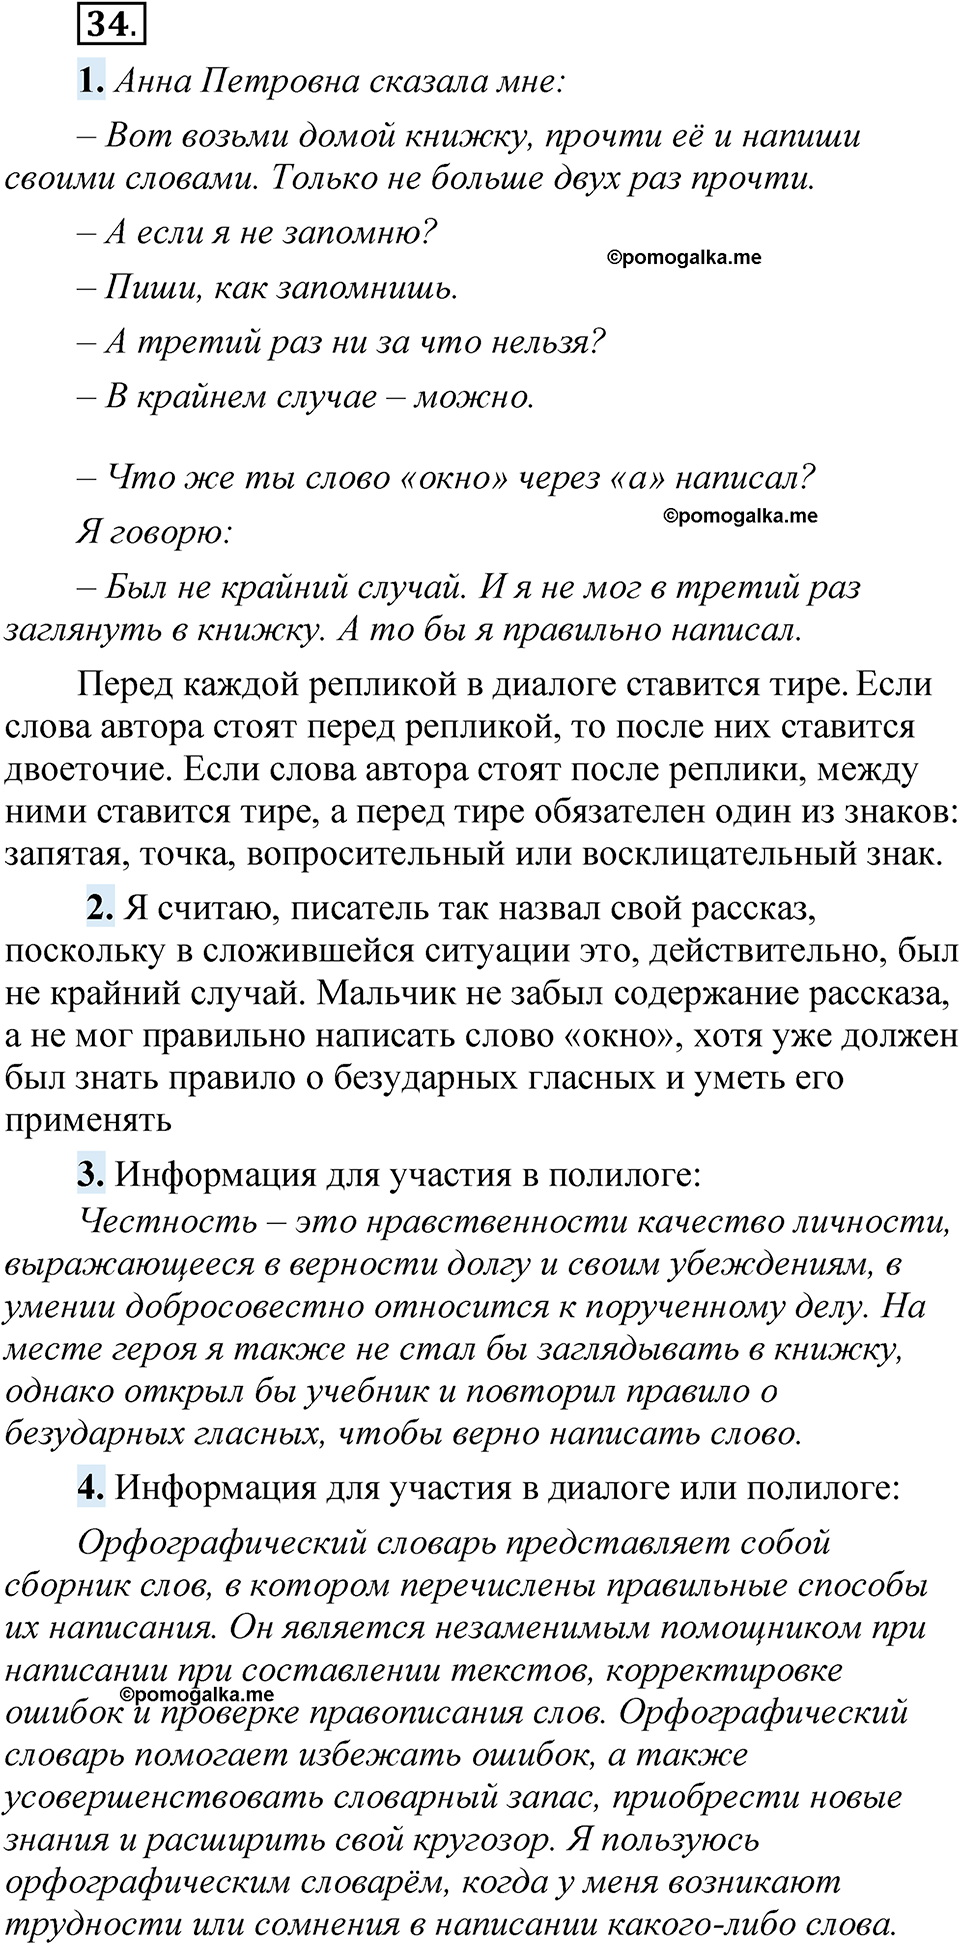 страница 28 упражнение 34 русский язык 5 класс Быстрова, Кибирева 1 часть 2021 год